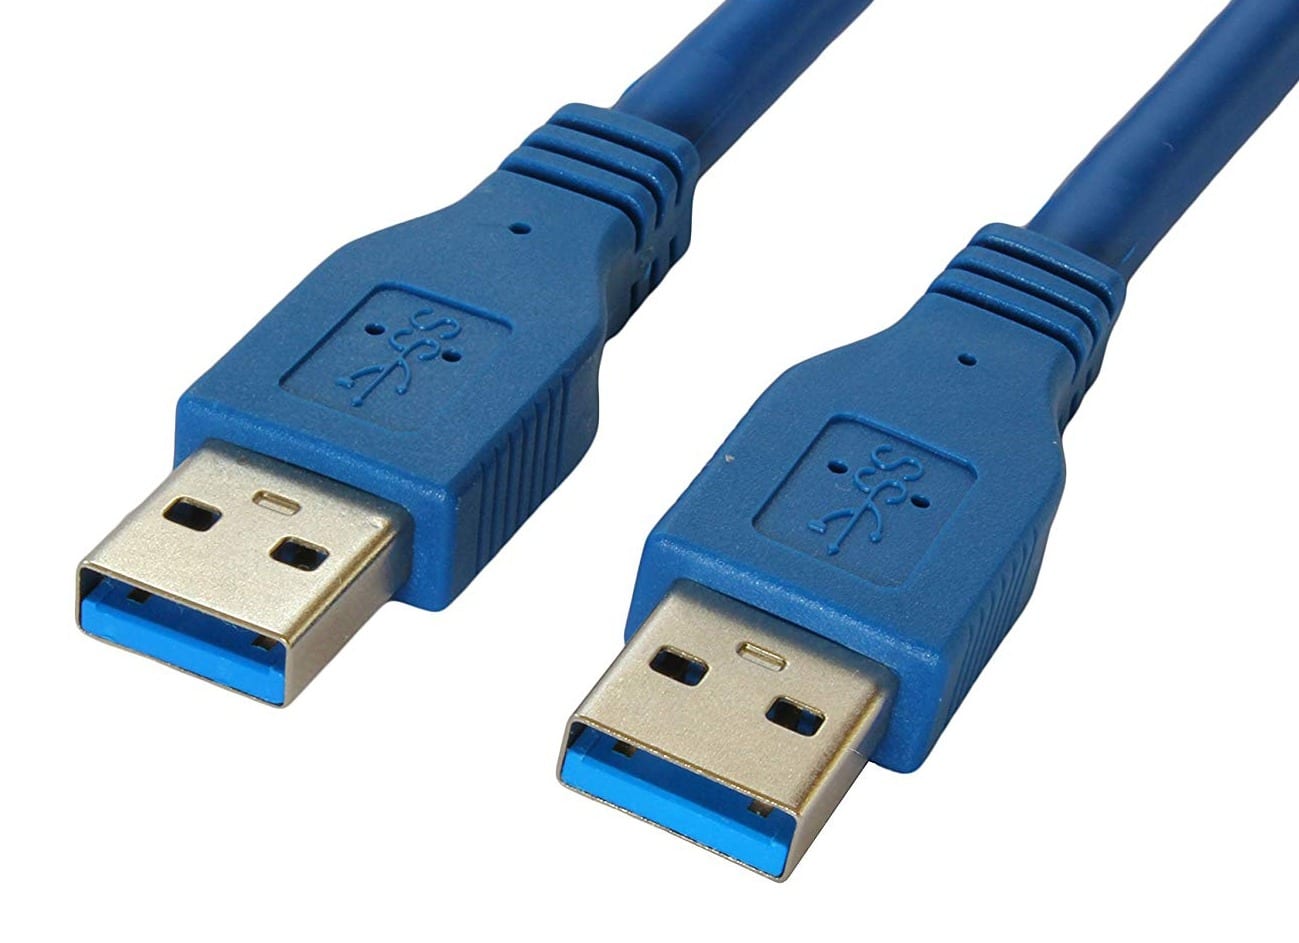 USB Type A